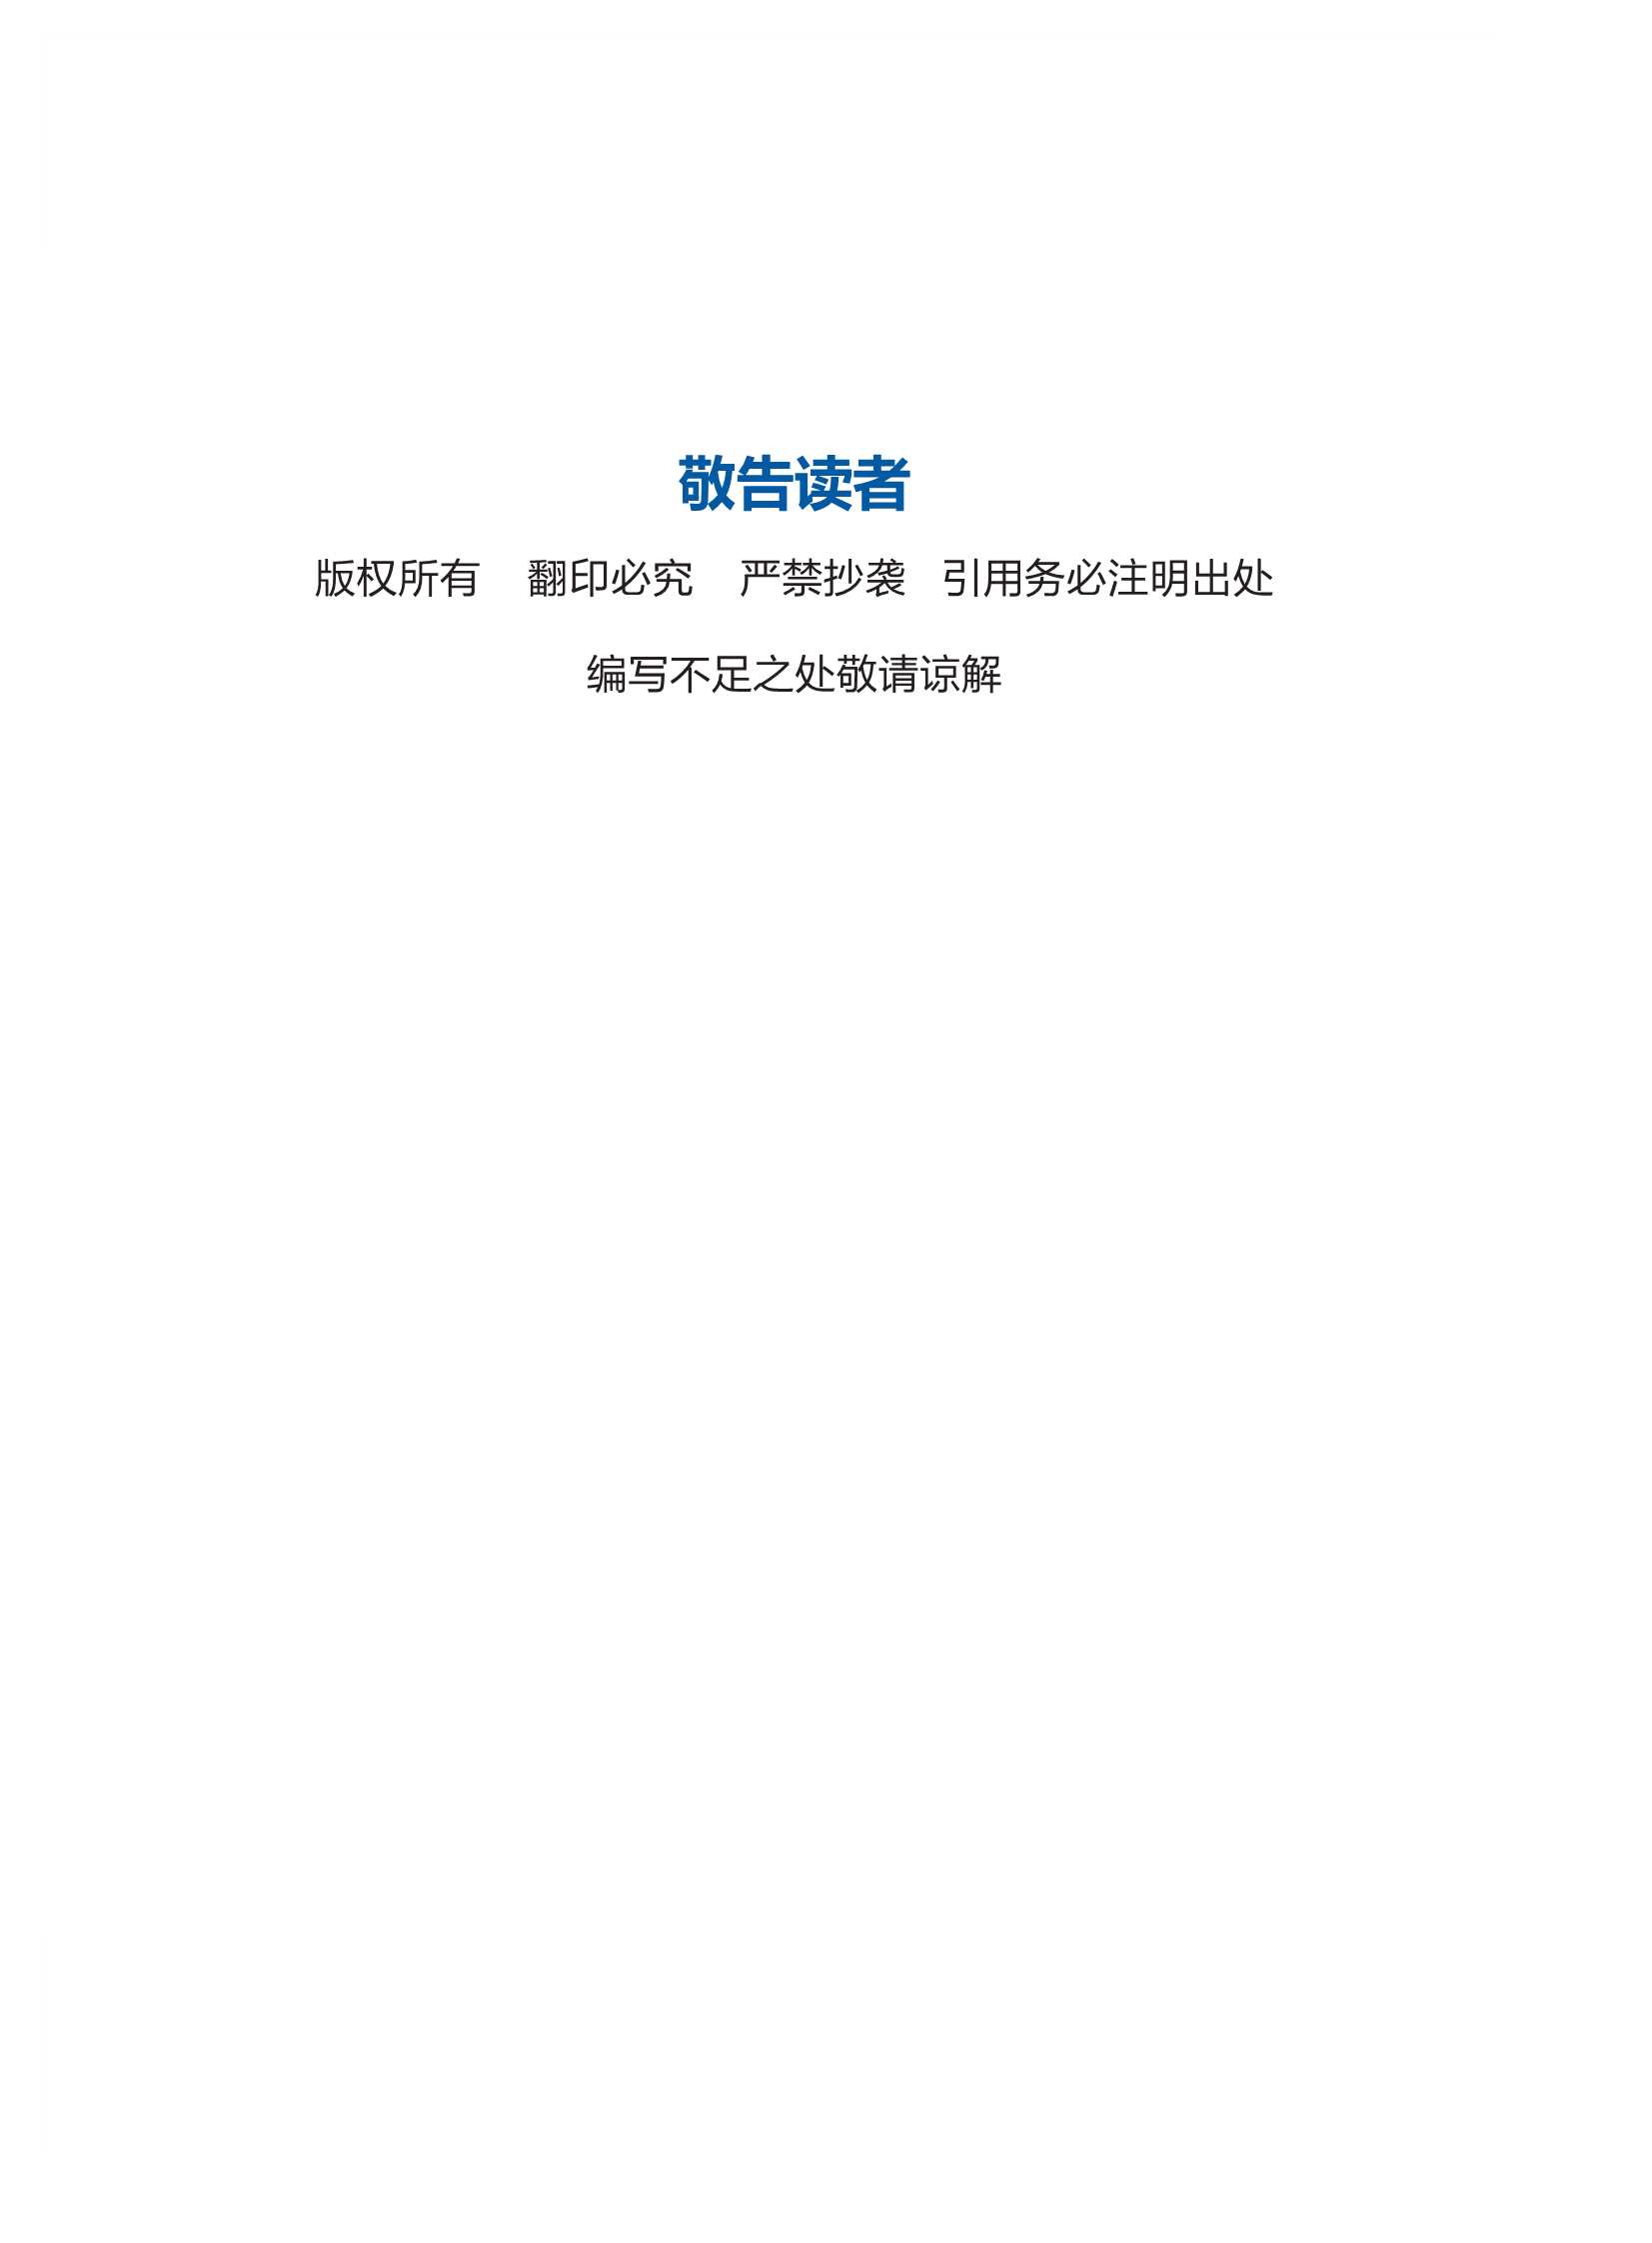 国家太阳能光热联盟秘书处-2021中国太阳能热发电行业蓝皮书-2022.02-74页